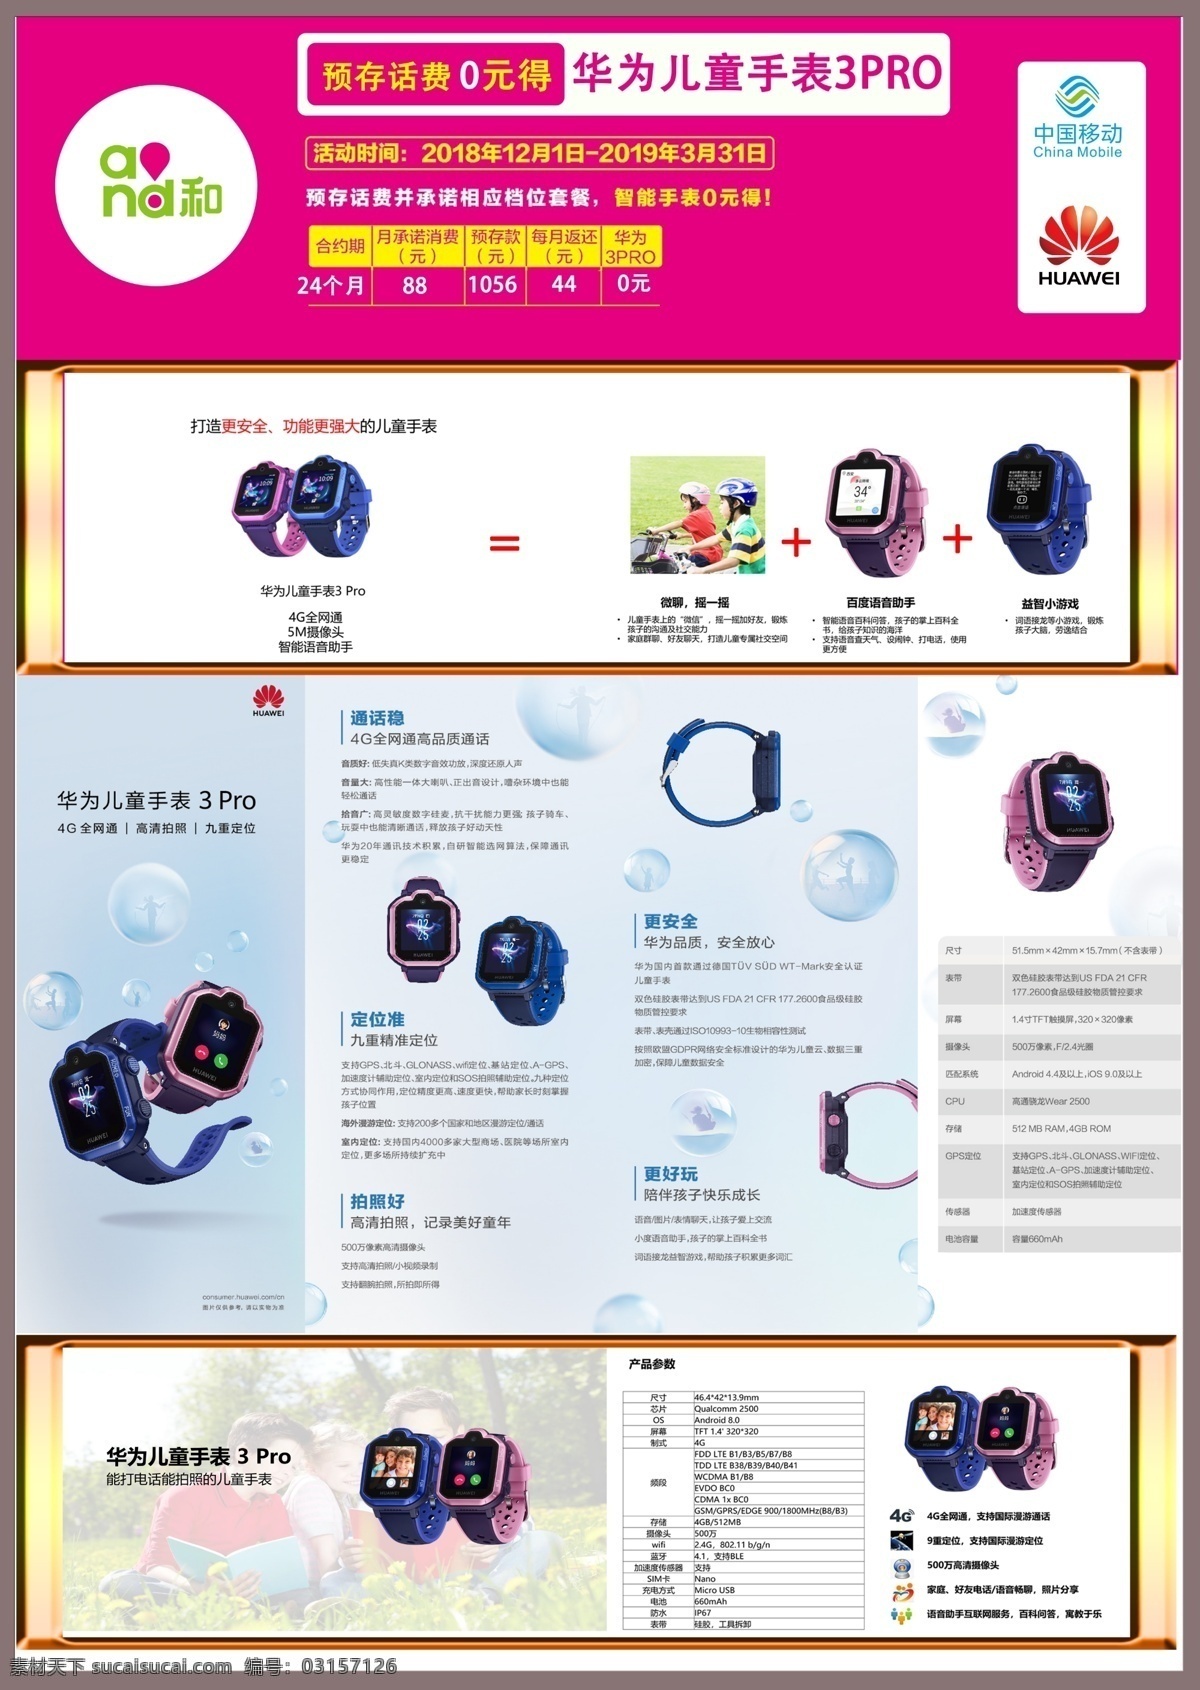 华为 儿童 手表 3pro 宣传单 华为儿童手表 华为3pro 华为宣传单 为3pro 3pro手表 宣传海报